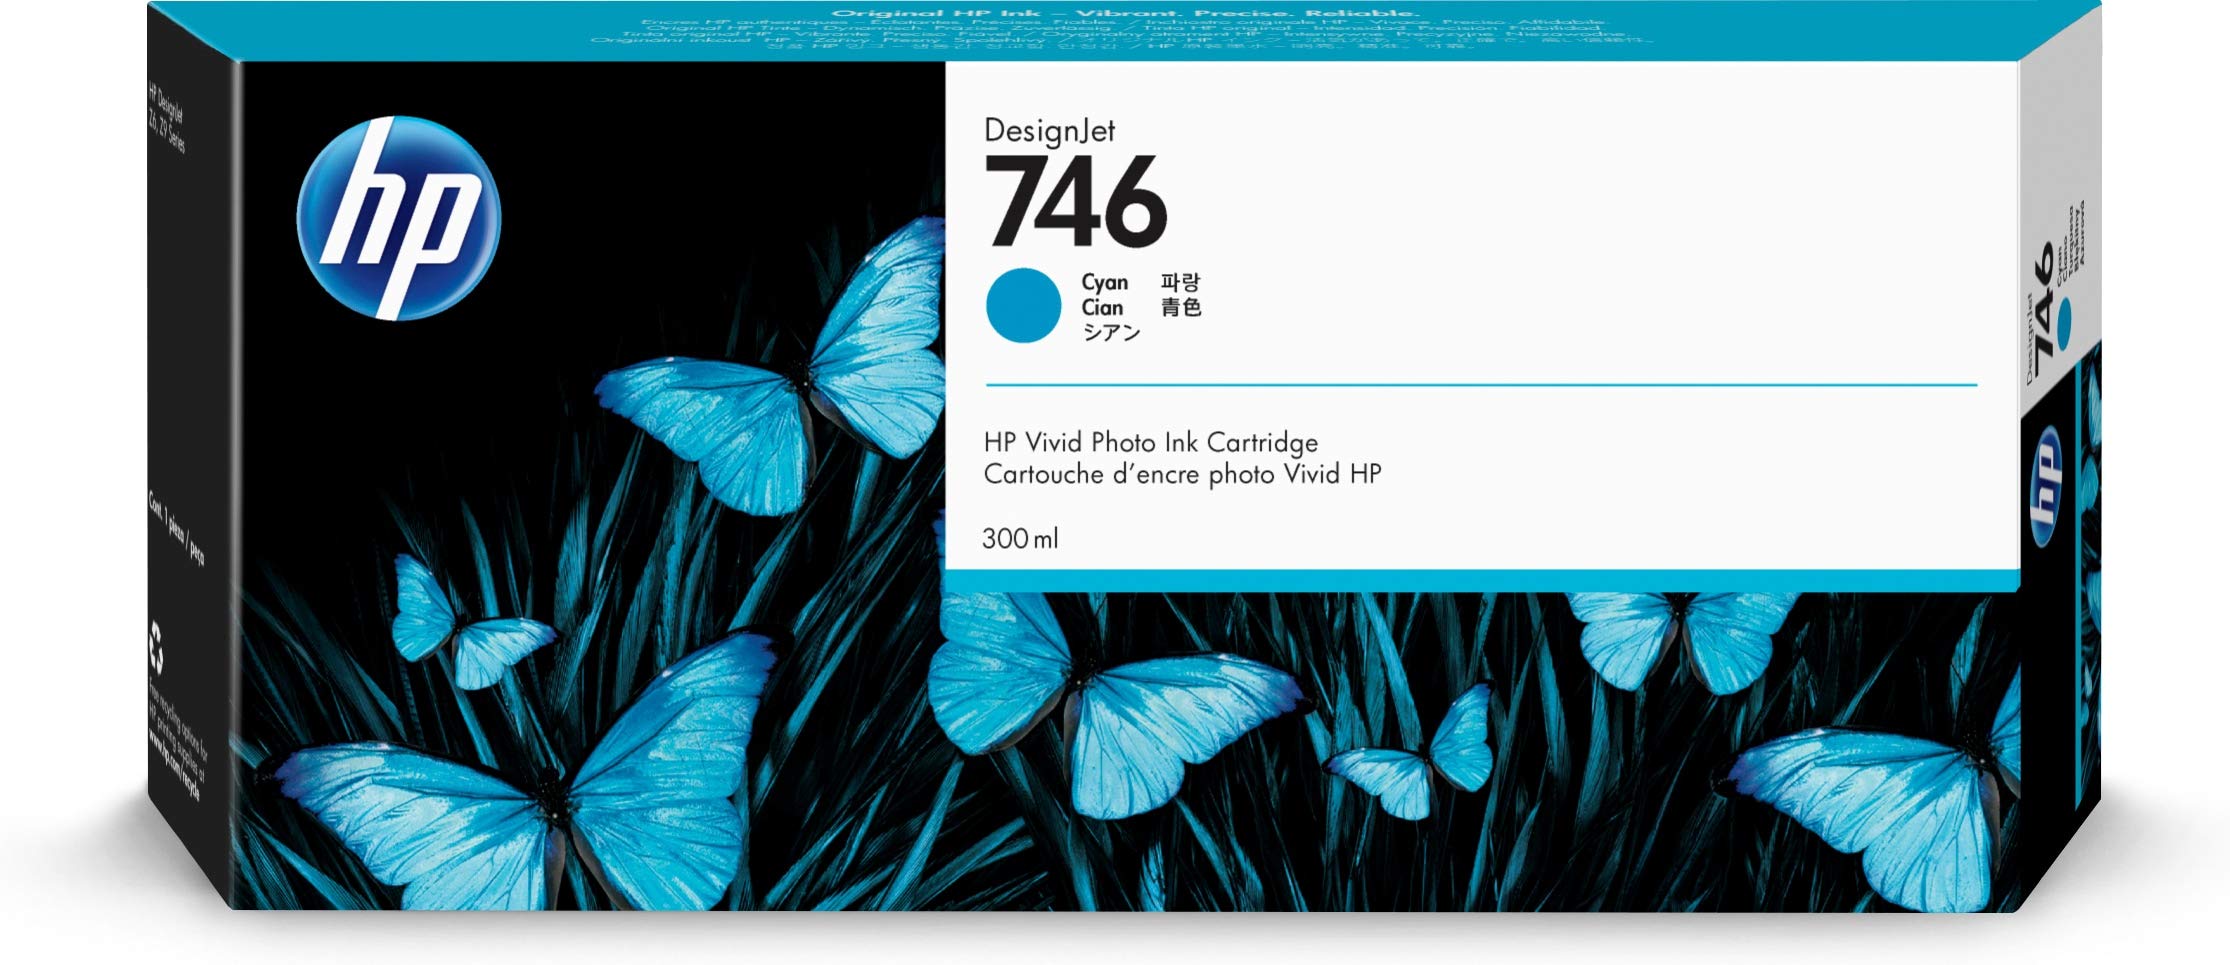  HP डिज़ाइनजेट Z6 और Z9+ बड़े प्रारूप प्रिंटर के लिए 746 सियान 300-मिली असली इंक कार्ट...